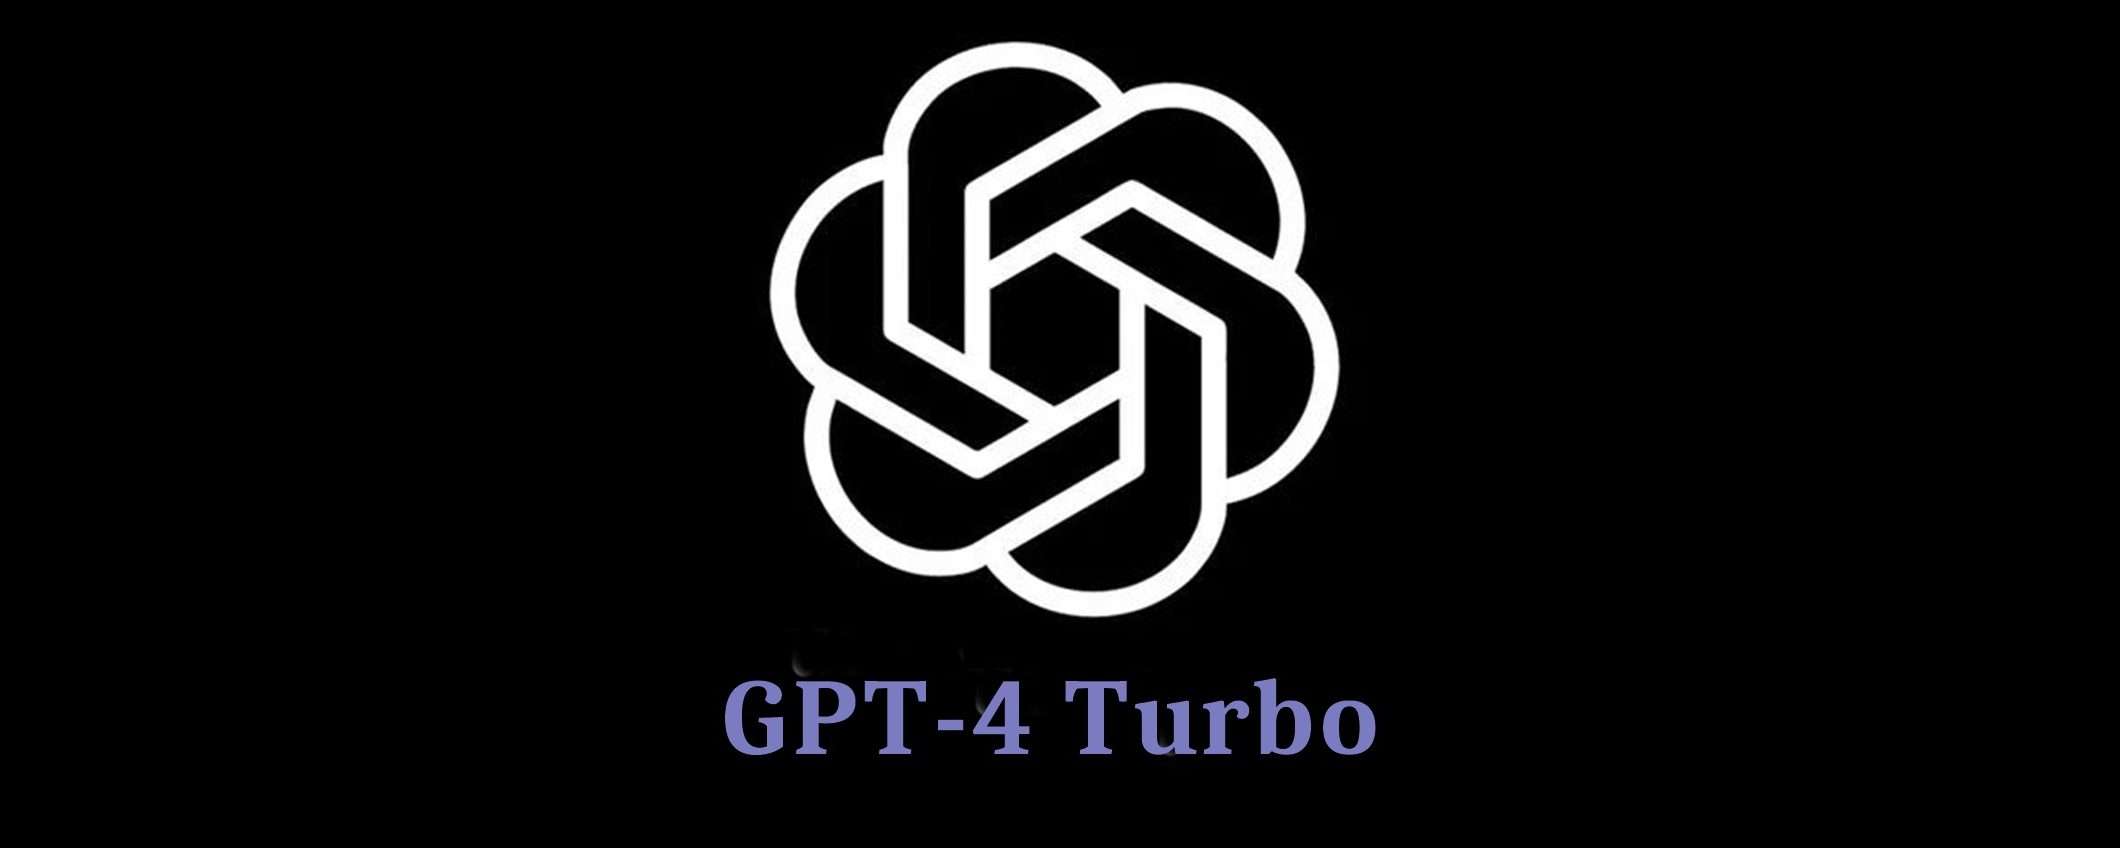 Chatbot Arena: GPT-4 Turbo è il miglior modello AI